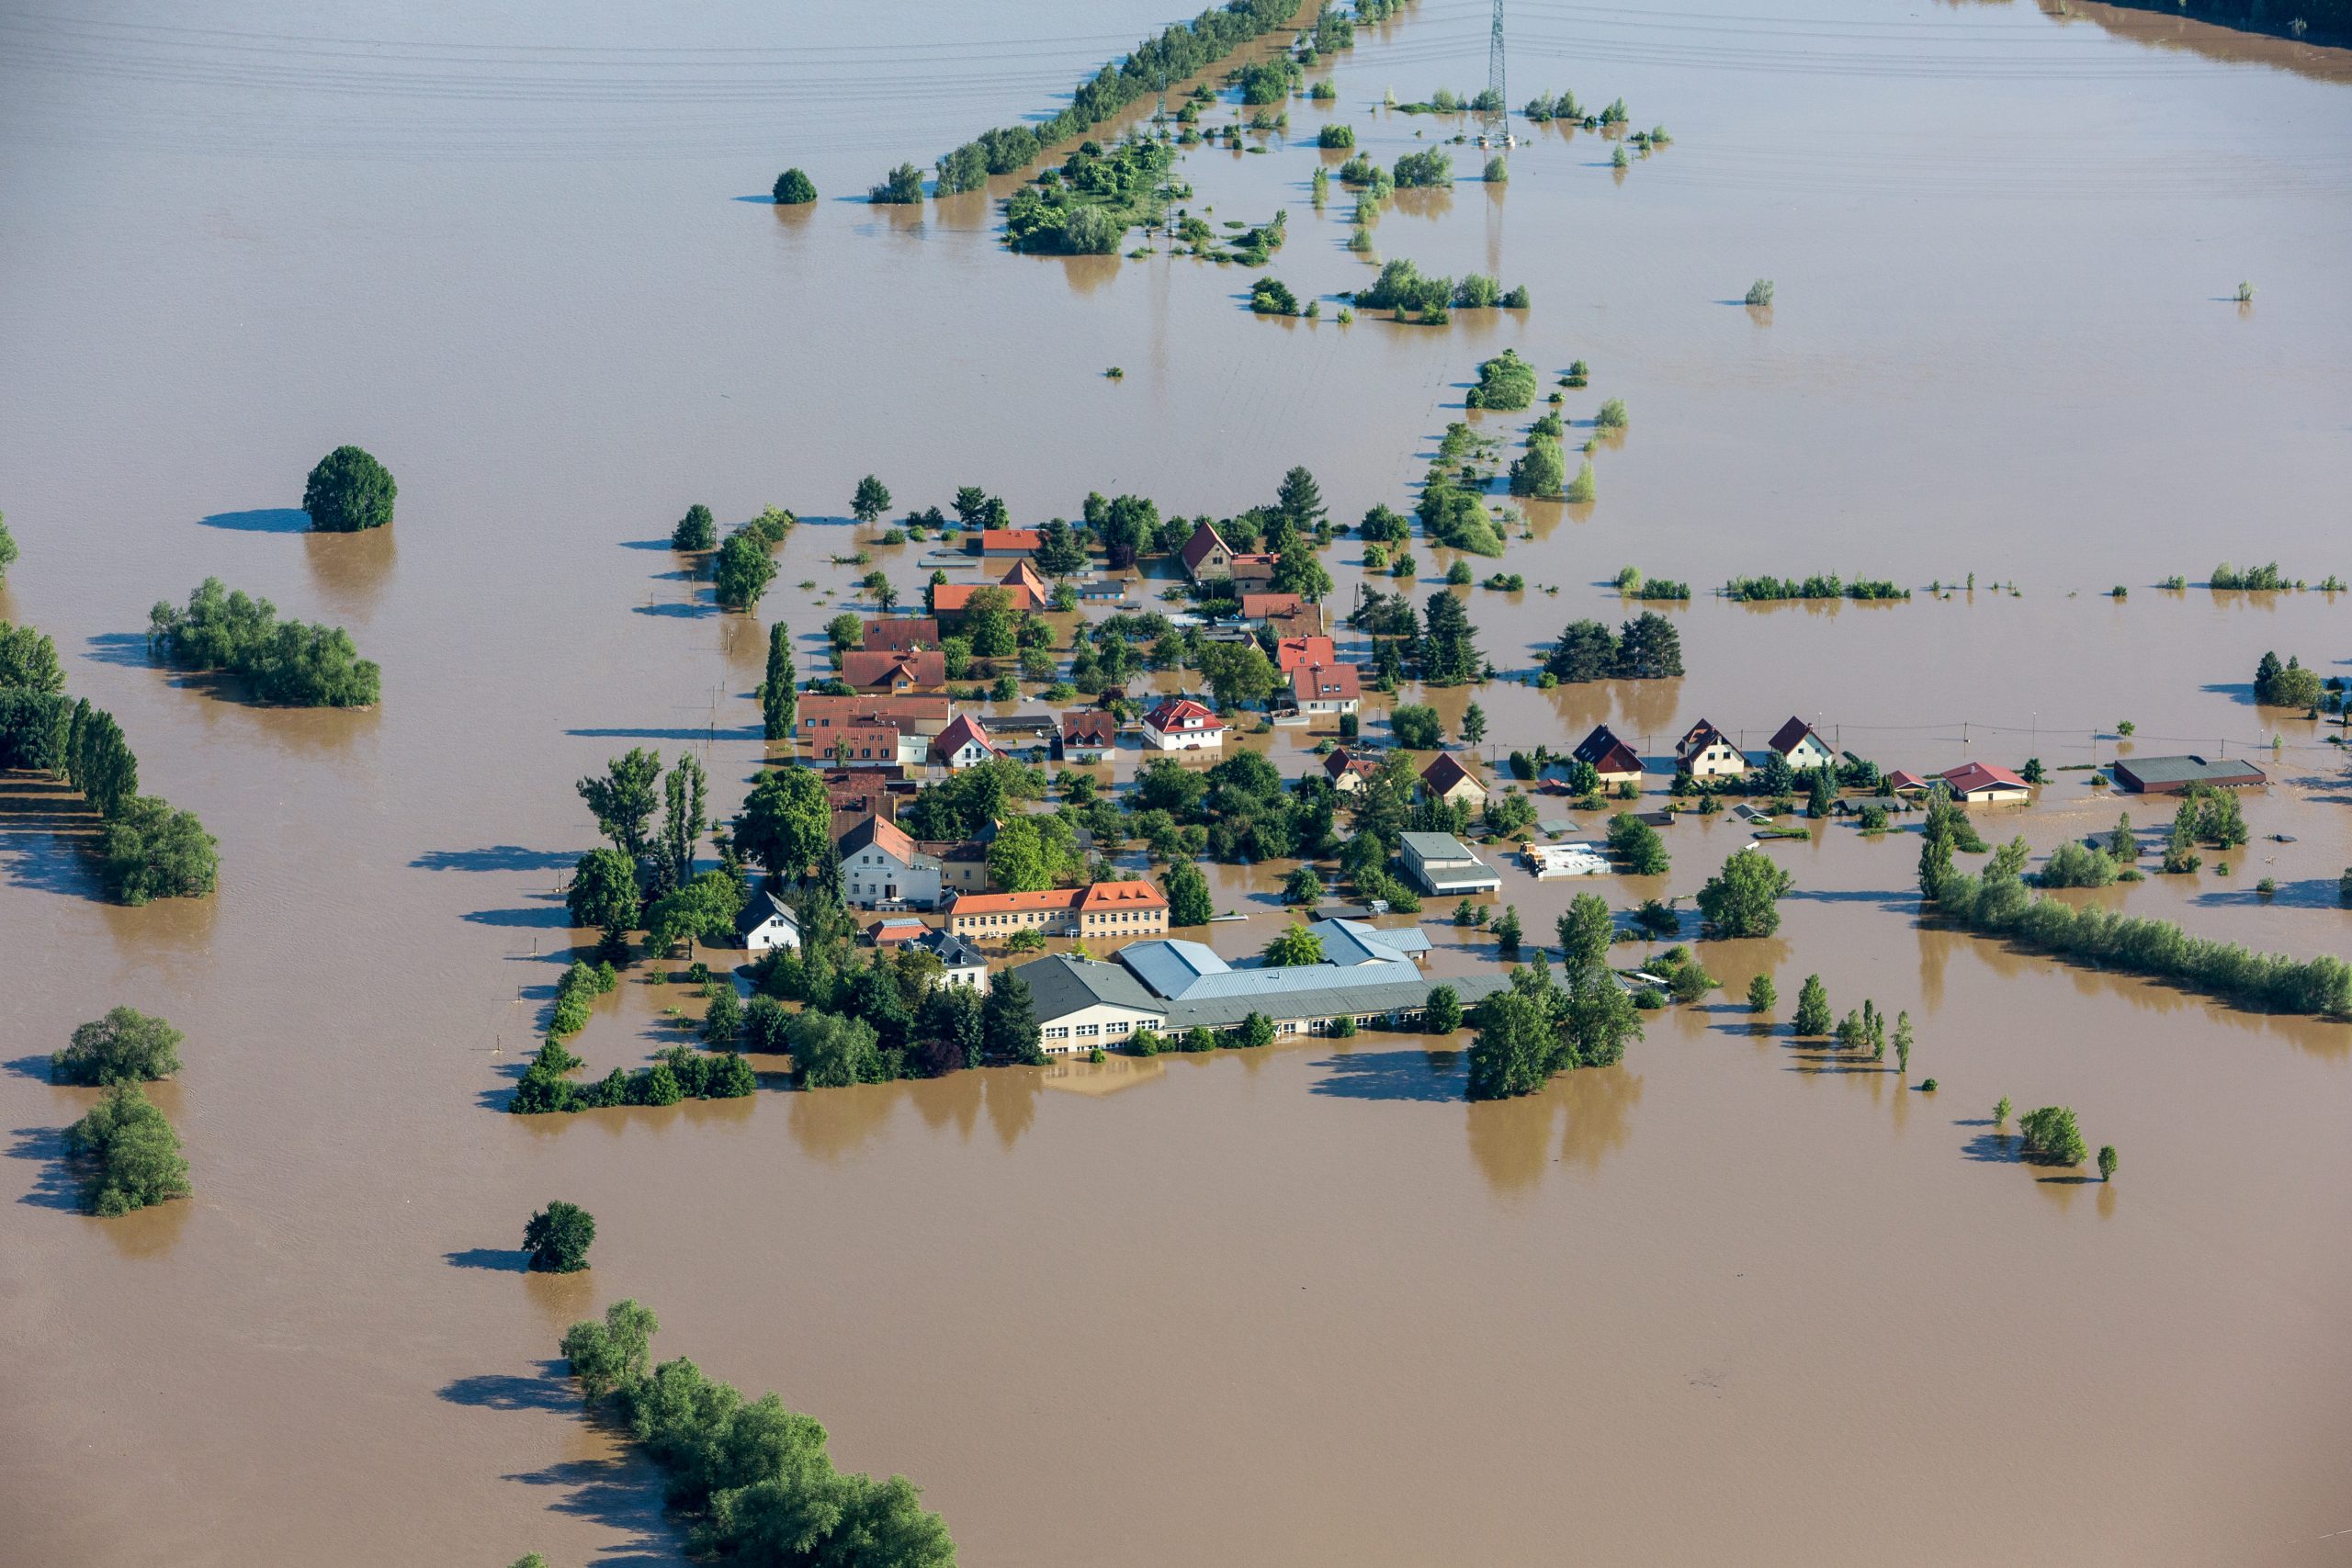 Luftbild eines Dorfes bei Hochwasser